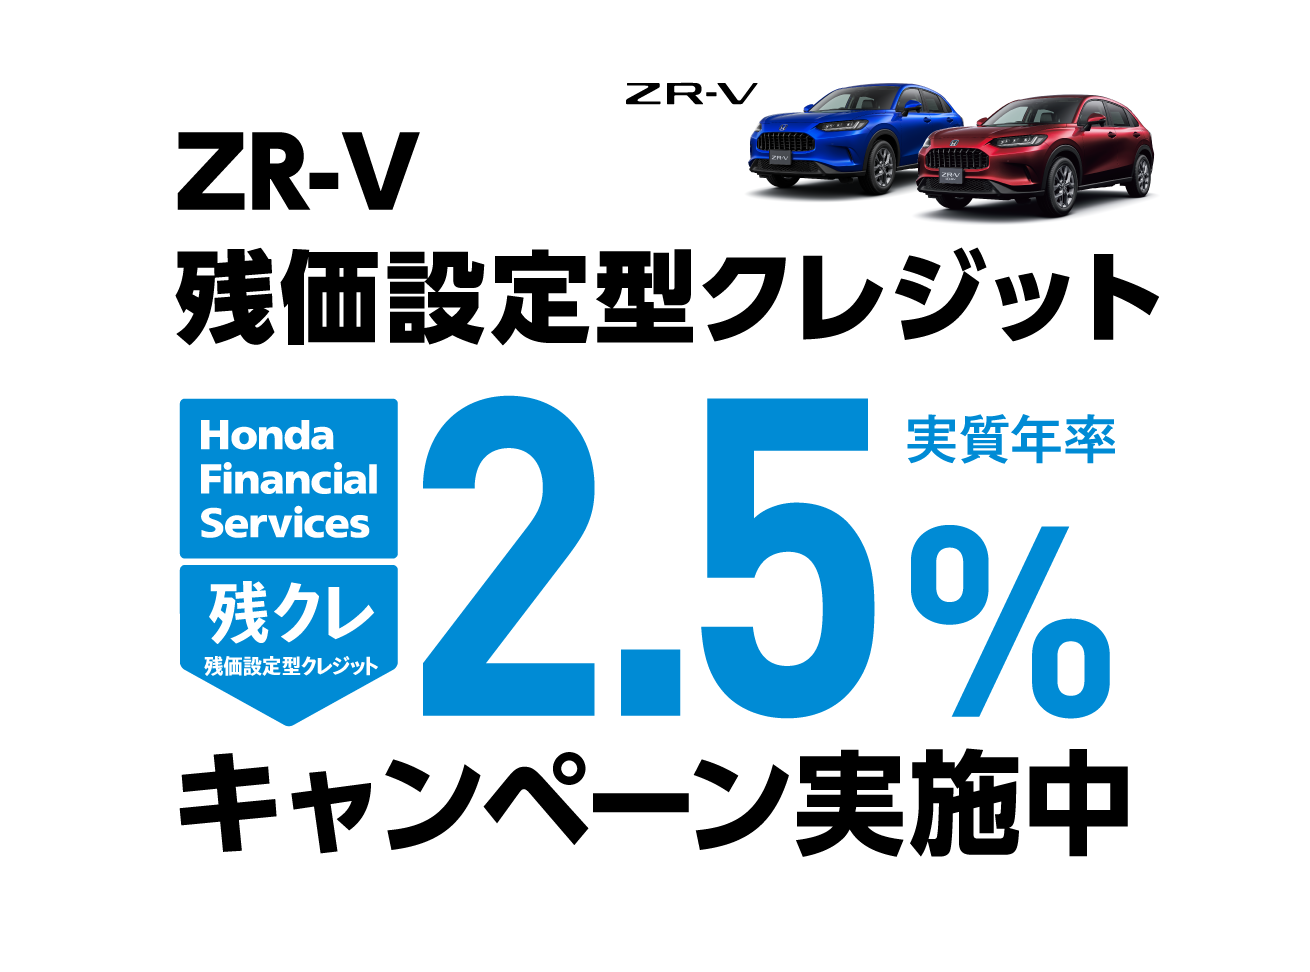 ZR-V 残価設定型クレジット 2.5%キャンペーン実施中